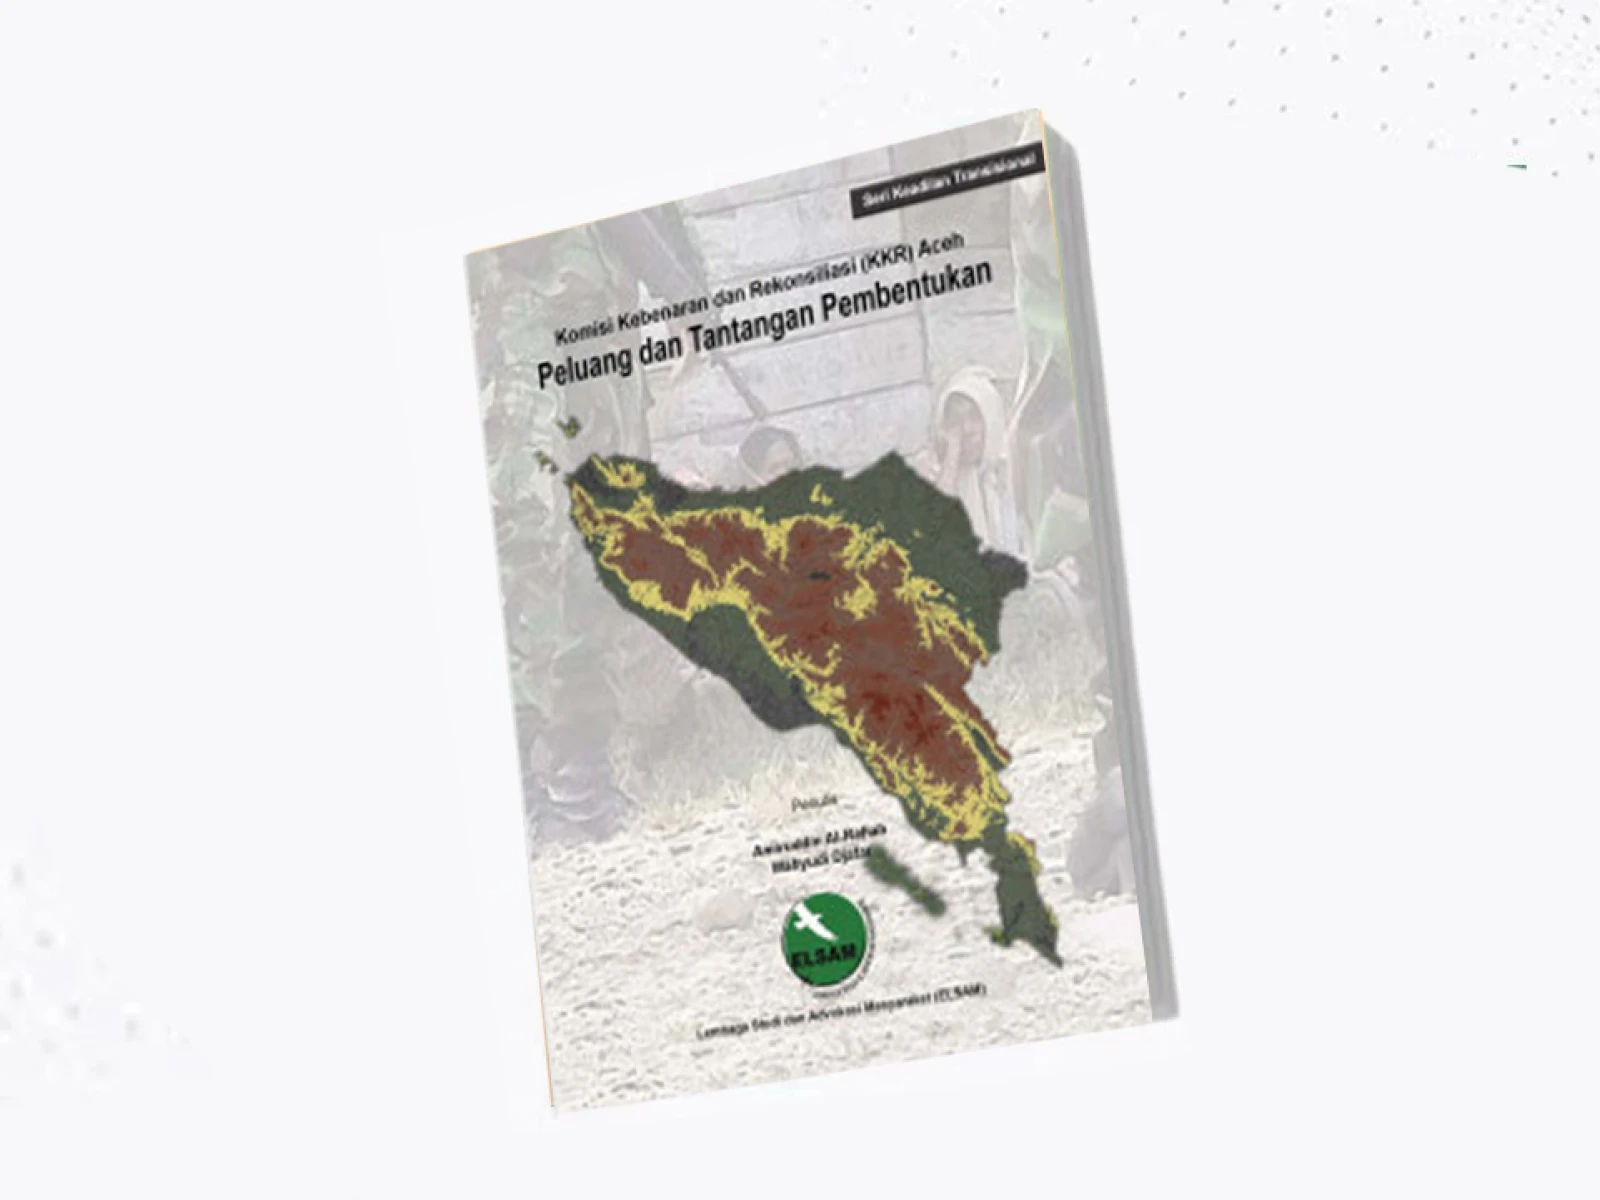 Komisi Kebenaran Dan Rekonsiliasi (KKR) Aceh: Peluang Dan Tantangan Pembentukan